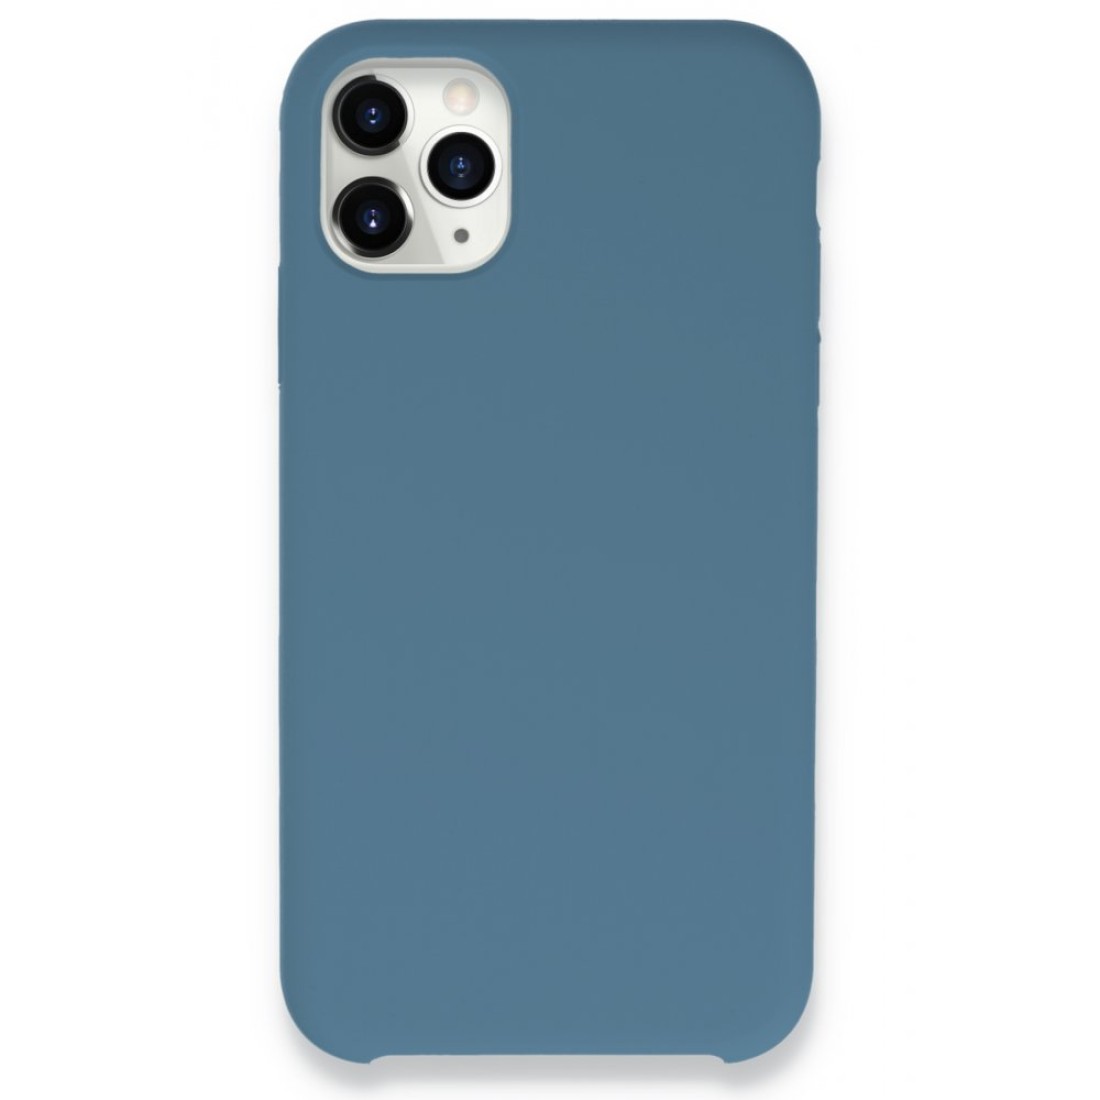 Apple iPhone 11 Pro Kılıf Lansman Legant Silikon - Açık Mavi